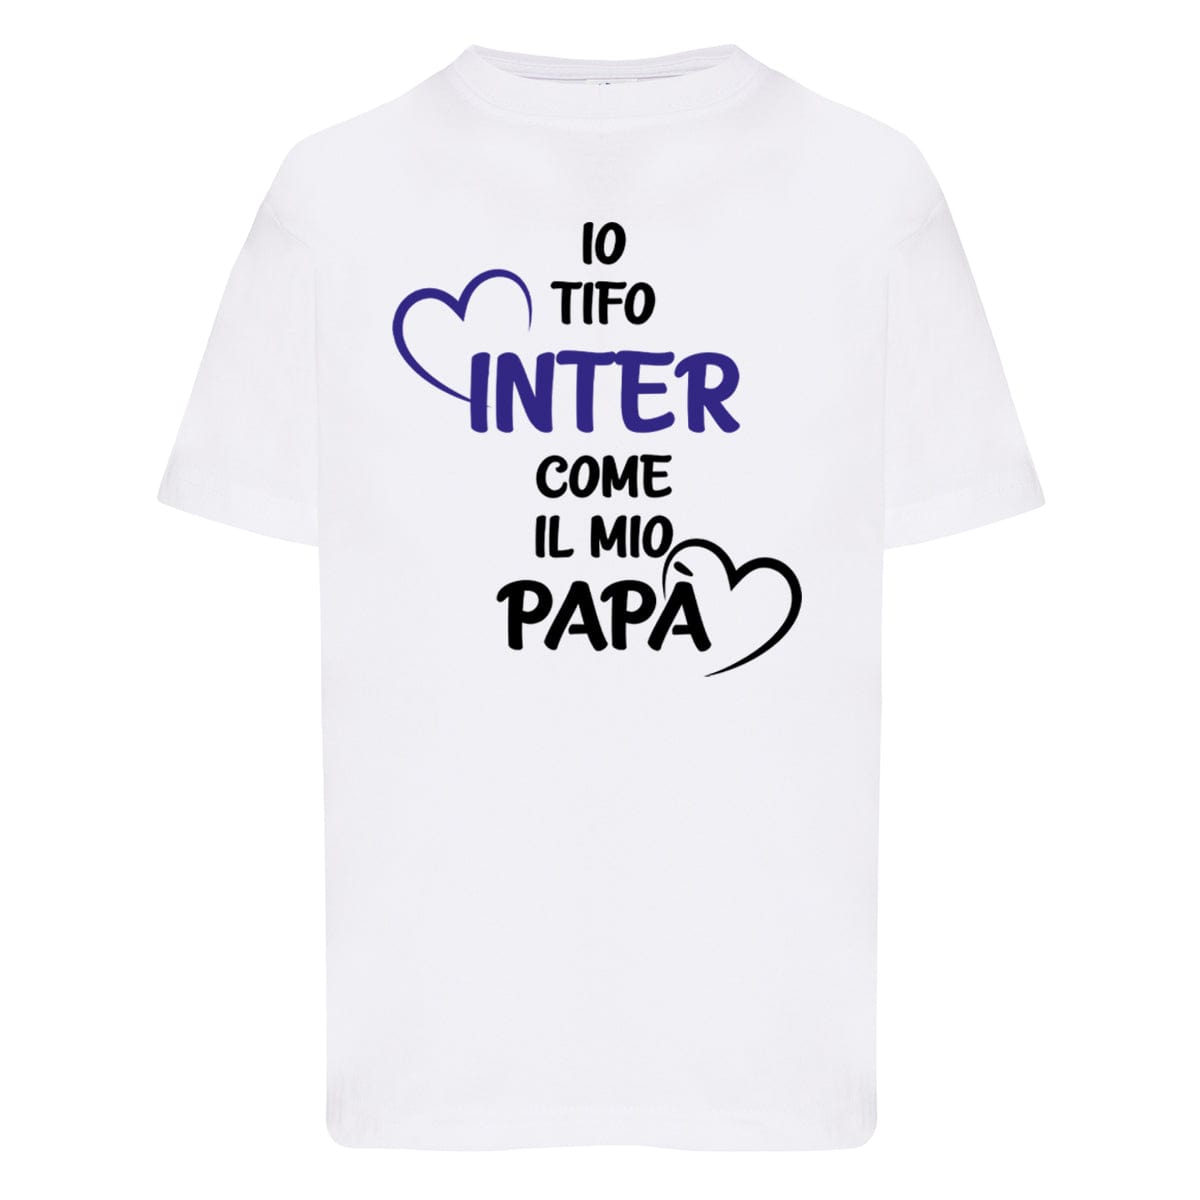 Lol T-Shirt T-shirt 3/4 Anni Io tifo inter come il mio papà